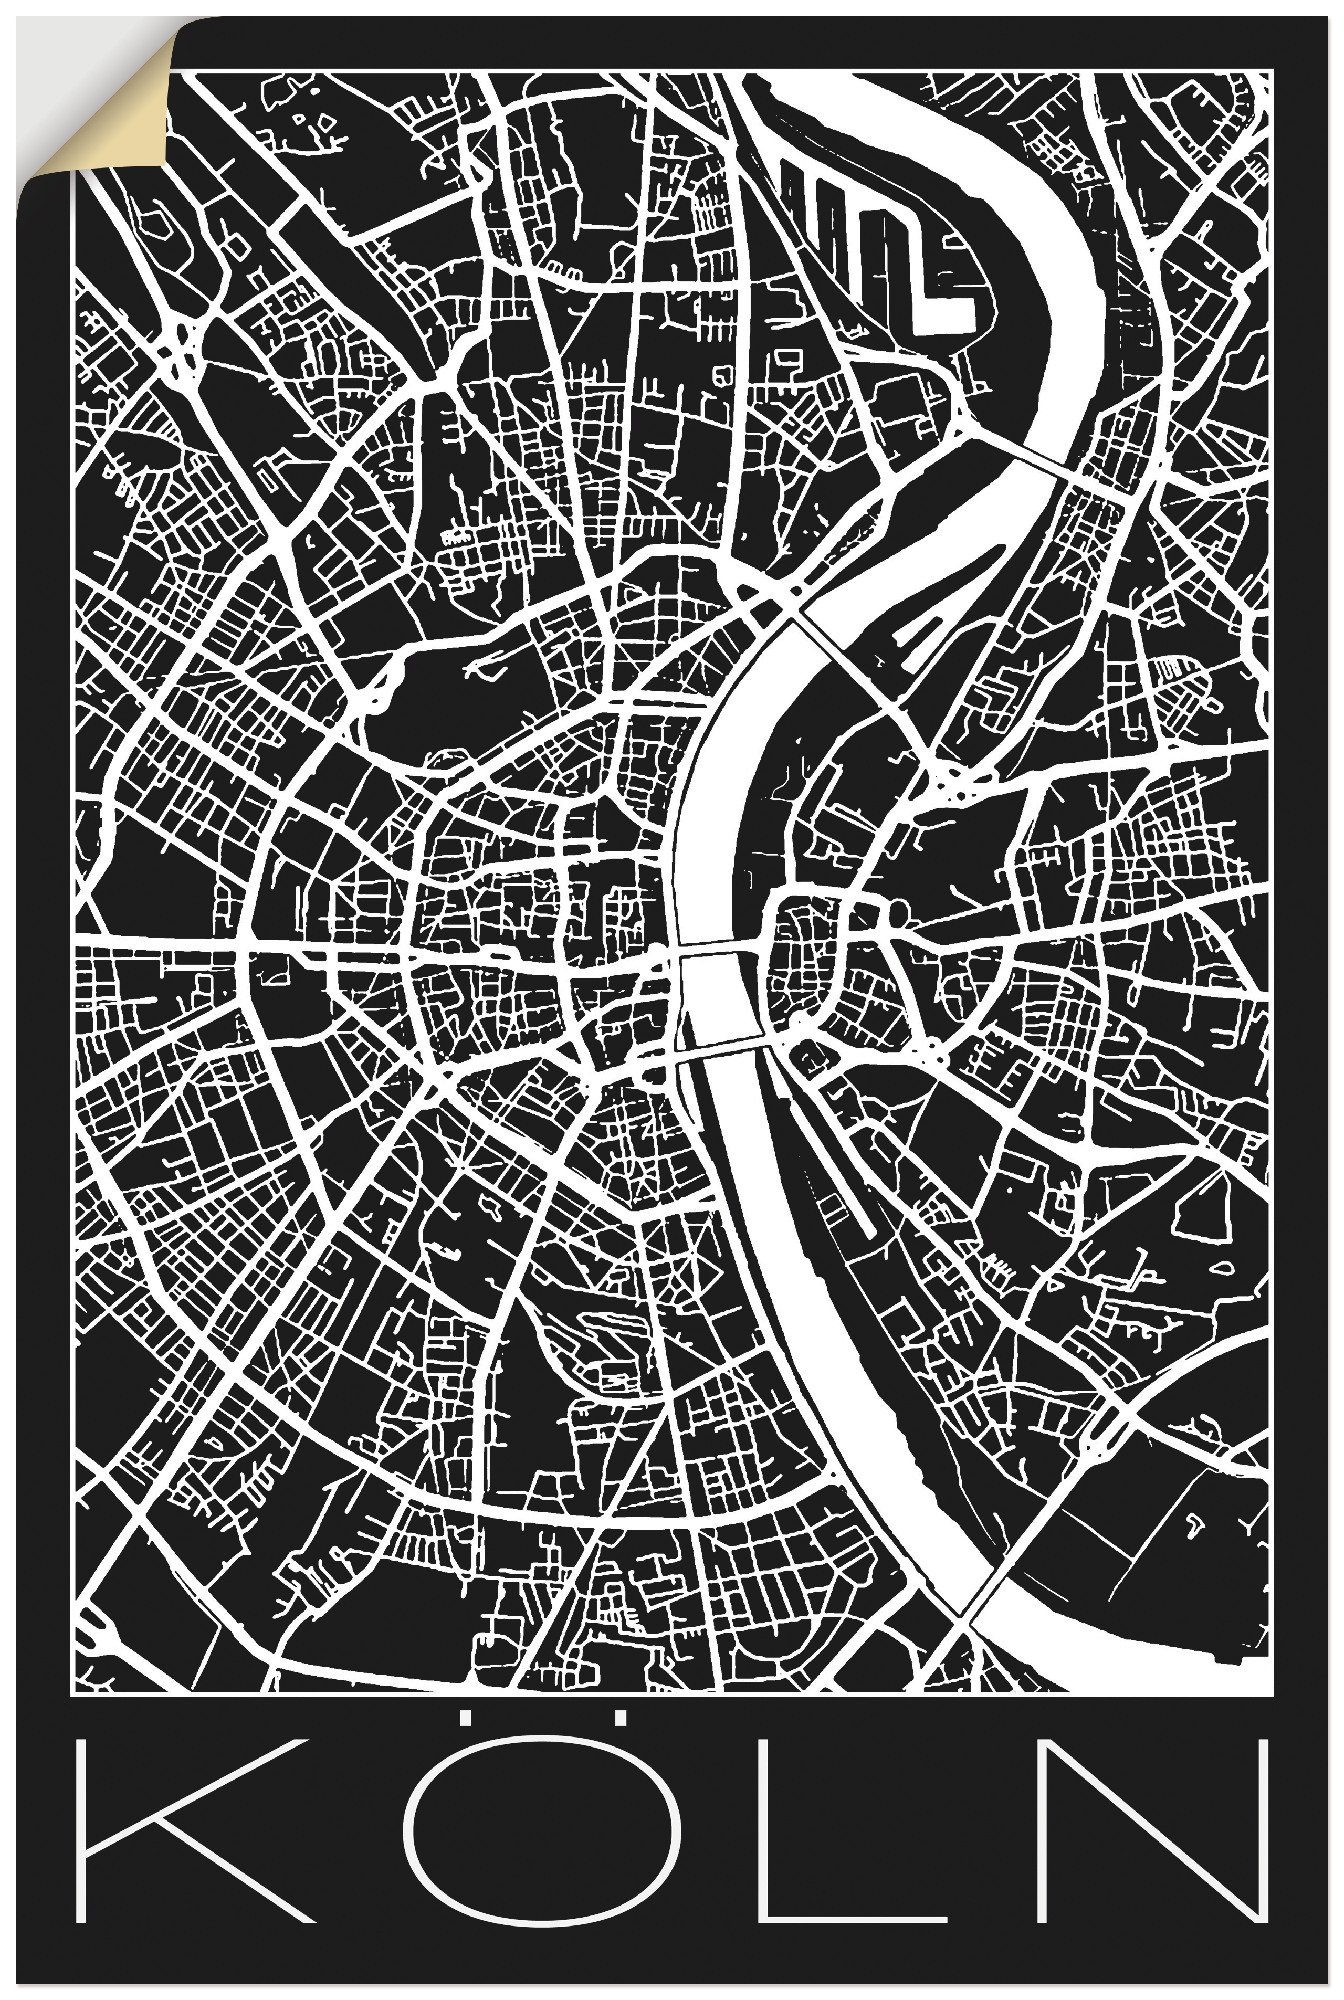 Artland Artprint Retro kaart Keulen Duitsland zwart in vele afmetingen & productsoorten - artprint van aluminium / artprint voor buiten, artprint op linnen, poster, muursticker / w